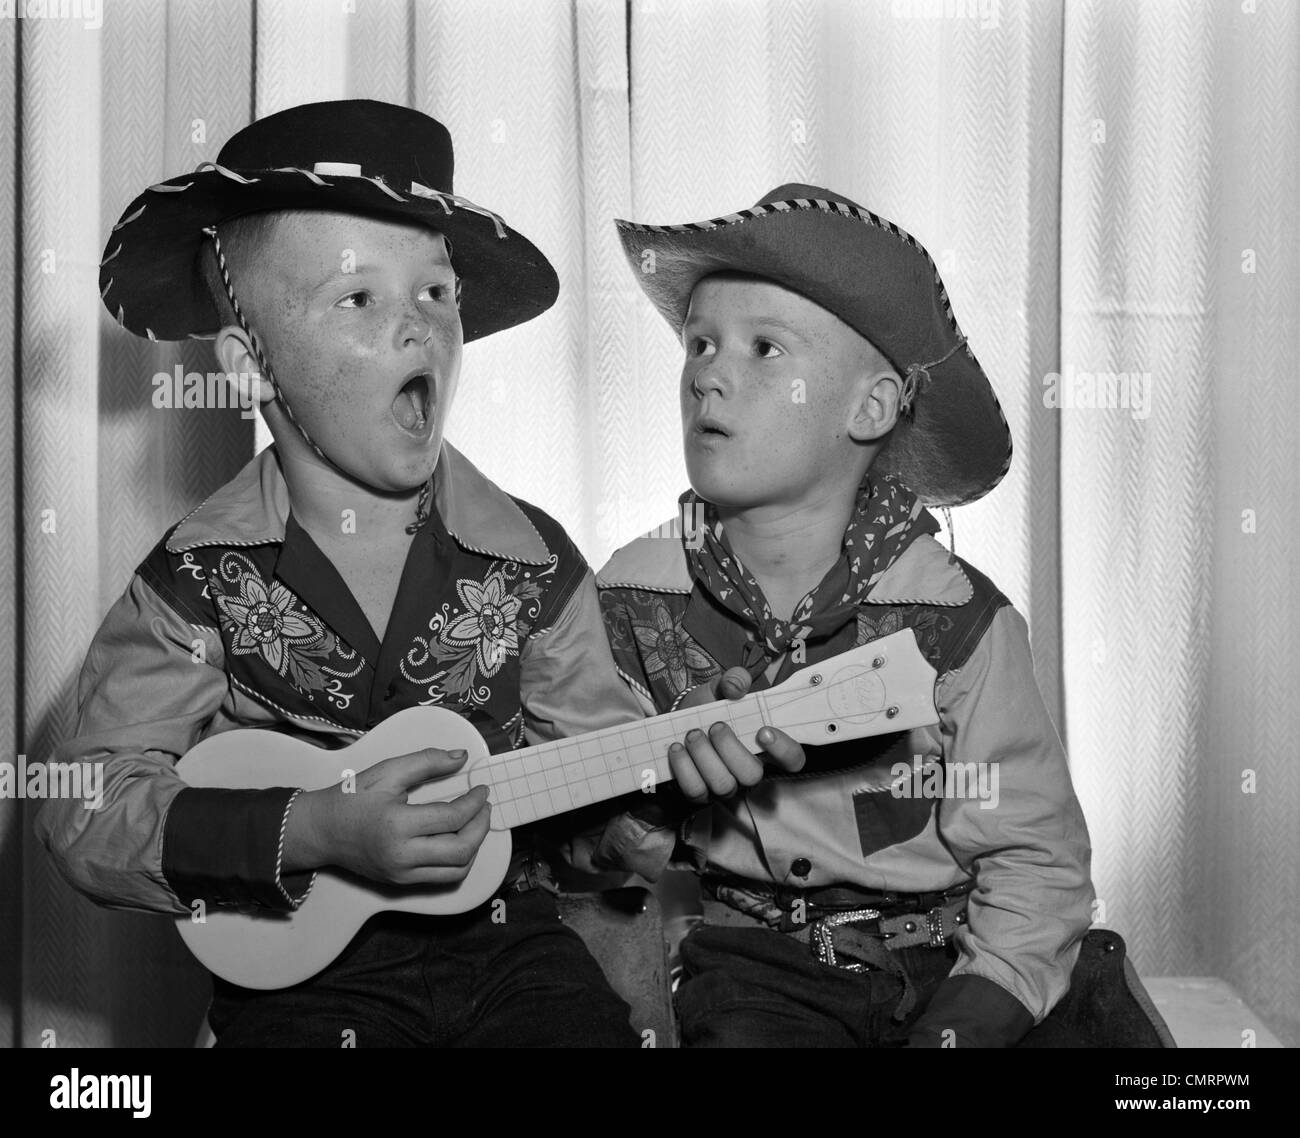 Années 50, 2 jeunes garçons en chapeau de cowboy & SHIRTS JOUER UKULELE & chanter la bouche grande ouverte Banque D'Images